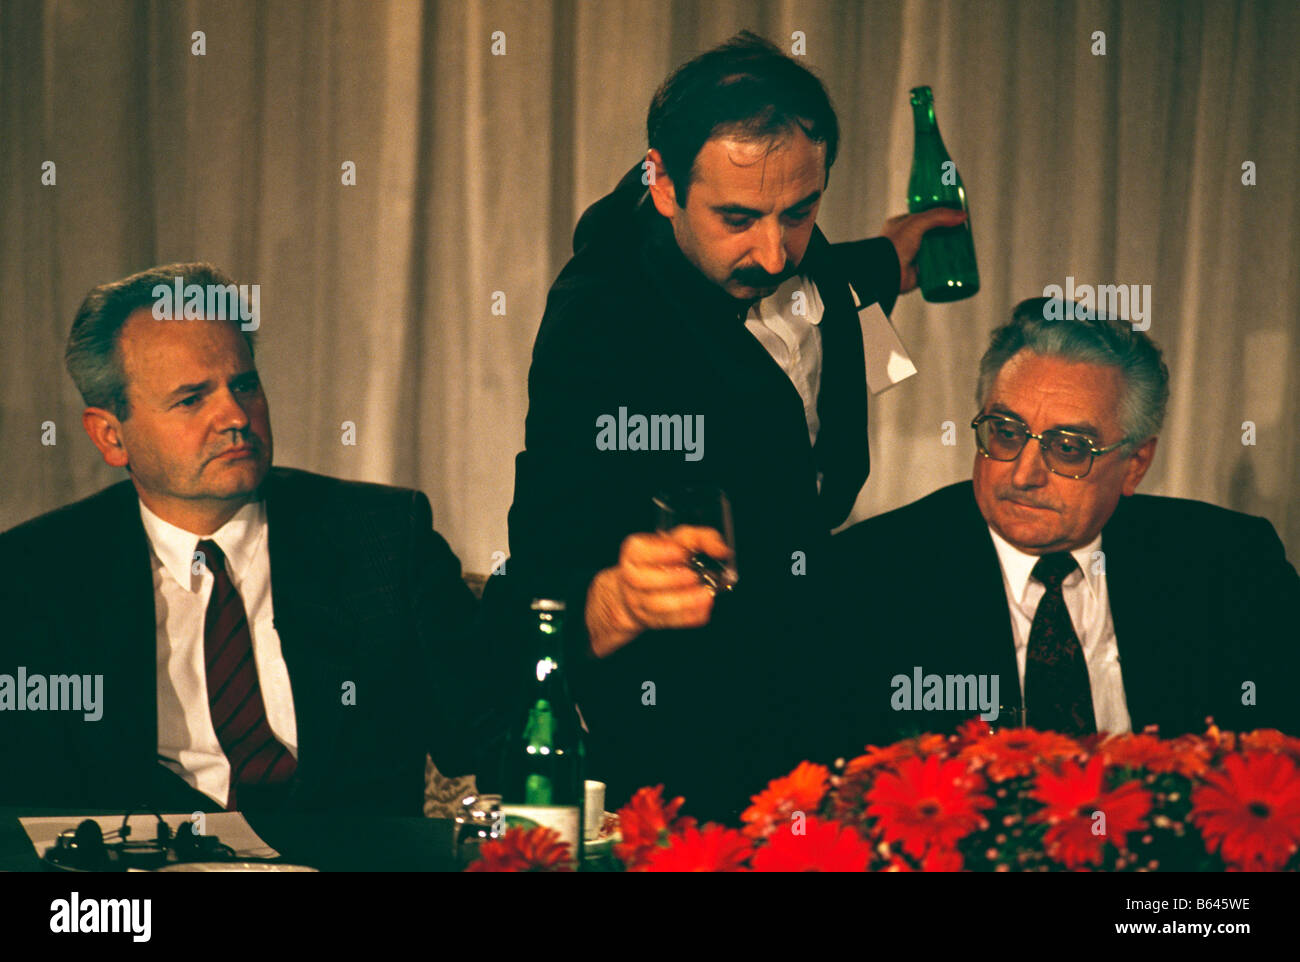 Serbische Diktator und Präsident Slobodan Milosevic (links) sitzt neben der kroatische Präsident Franko Tudjman (rechts), 1991. Stockfoto